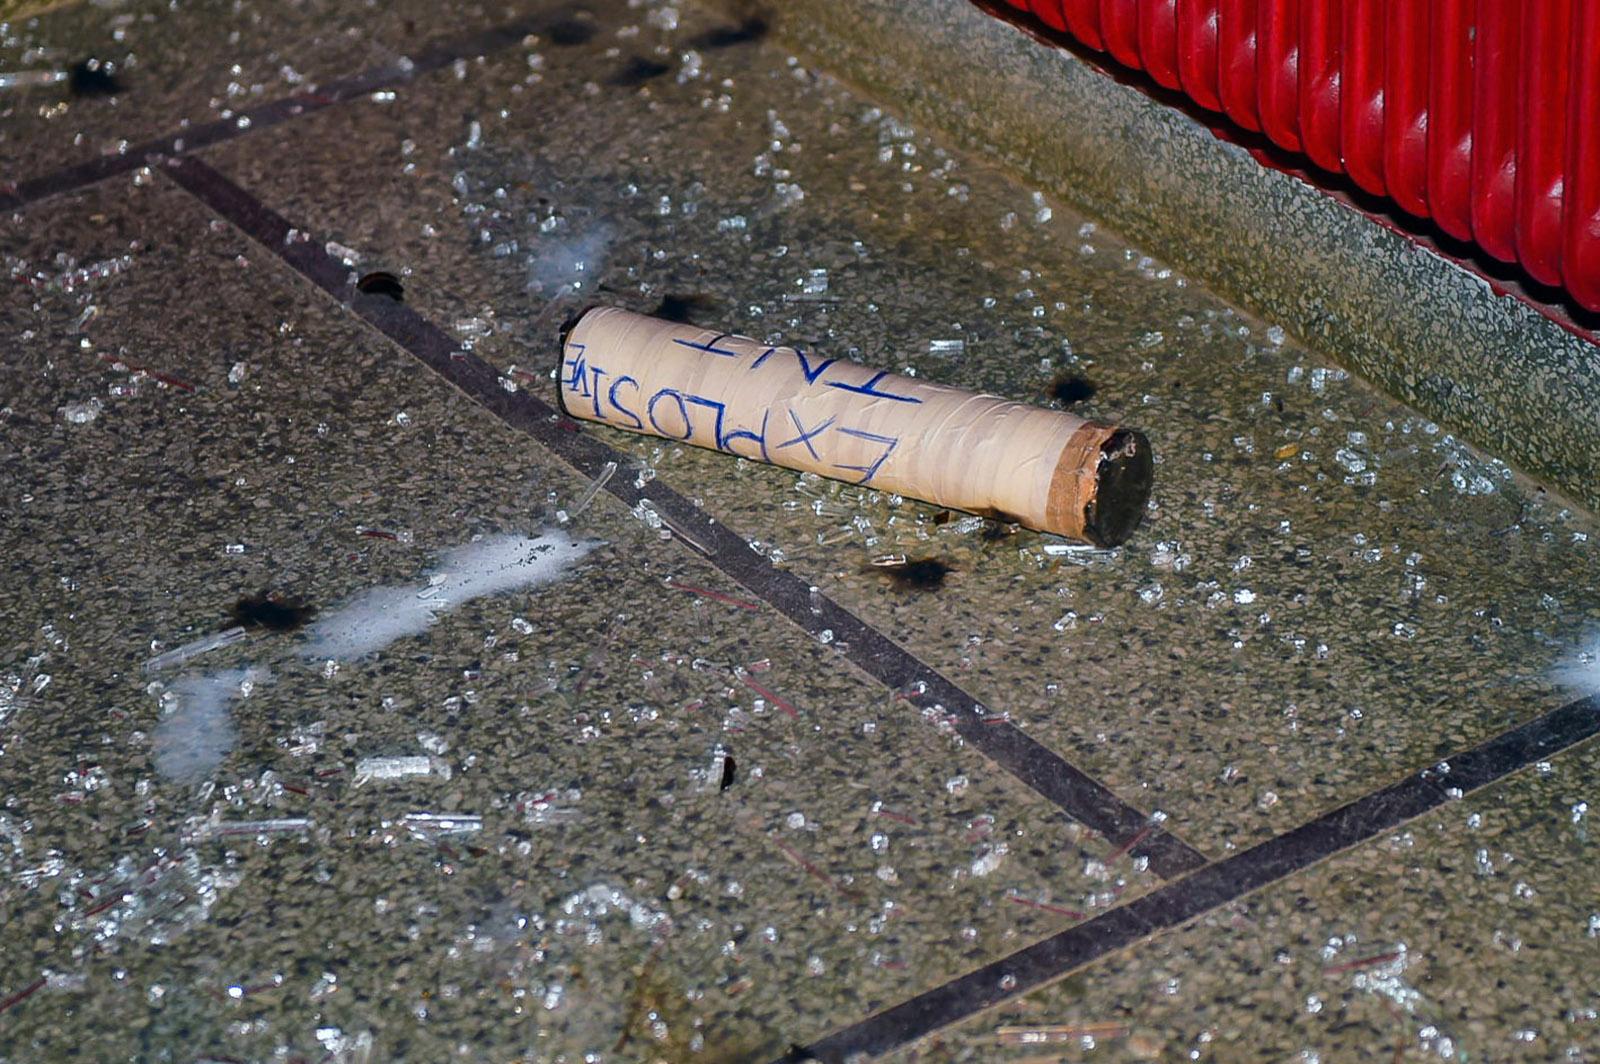 På bilder från Färingtofta syns hur ett föremål kastats in i skolan. På det rörliknande föremålet ser det ut som att någon skrivit ordet ”explosivt”.